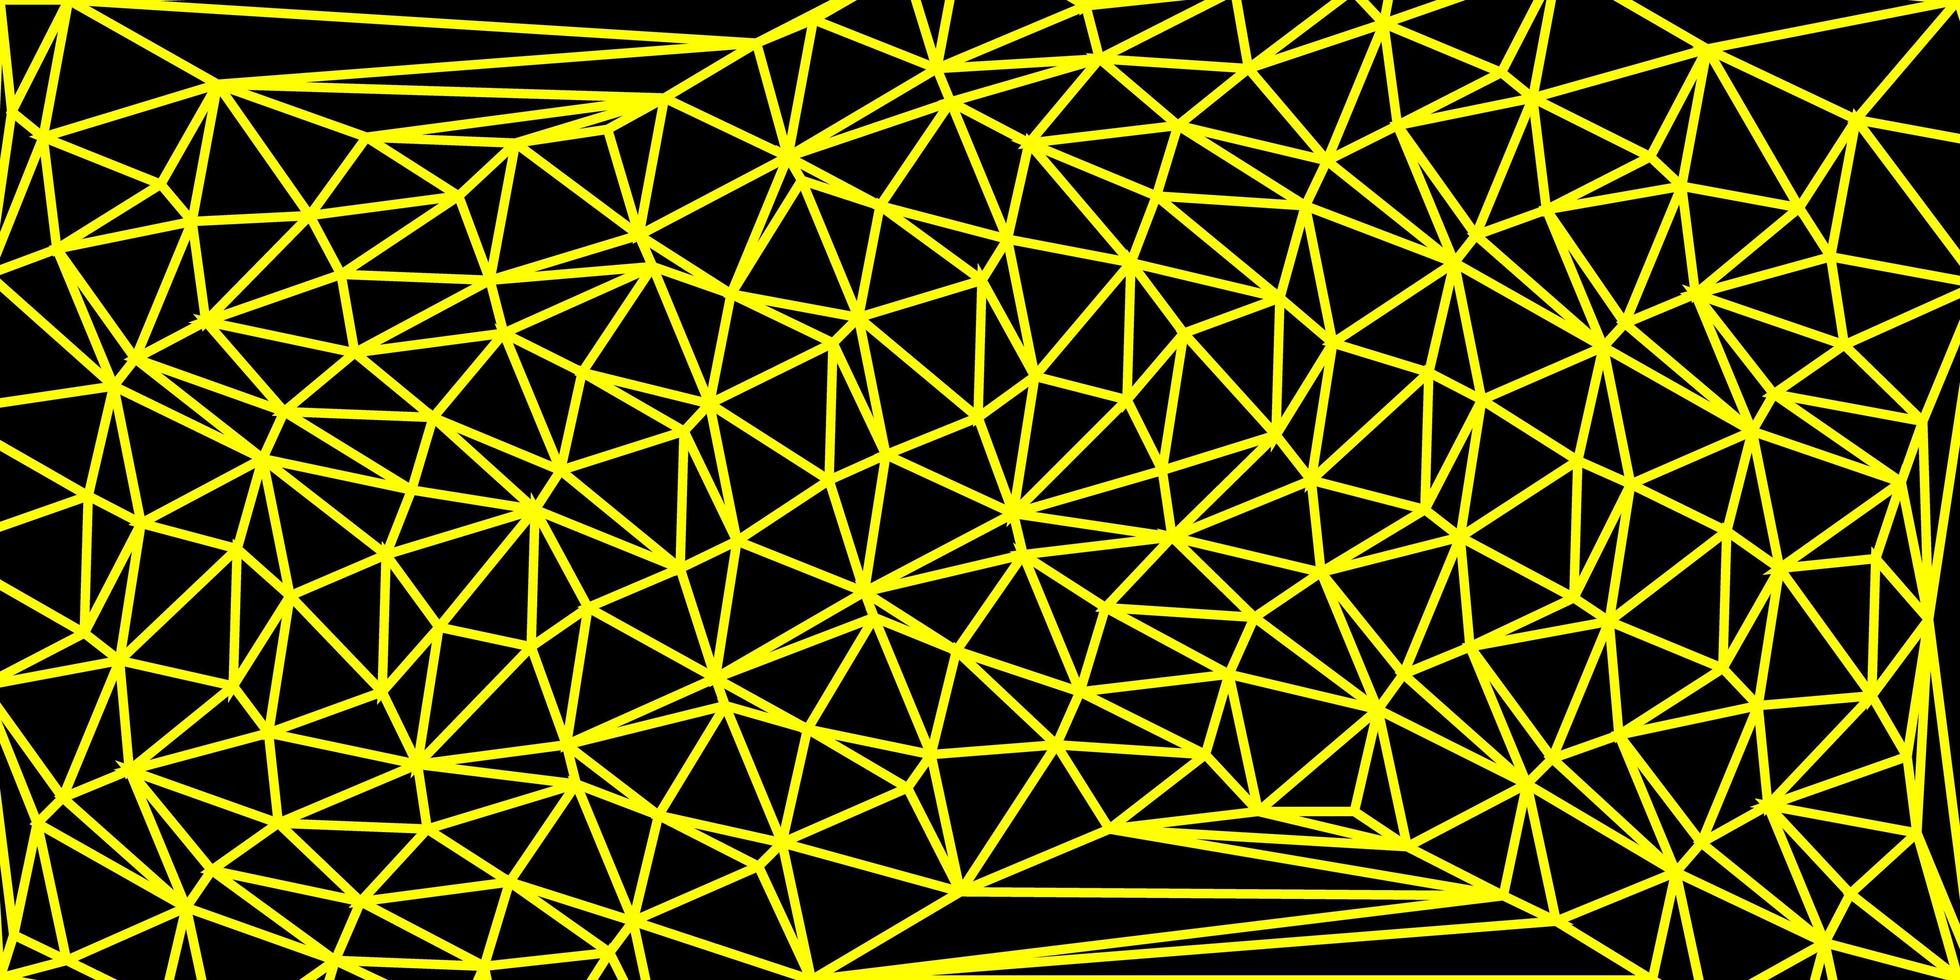 pano de fundo do mosaico do triângulo do vetor amarelo claro.